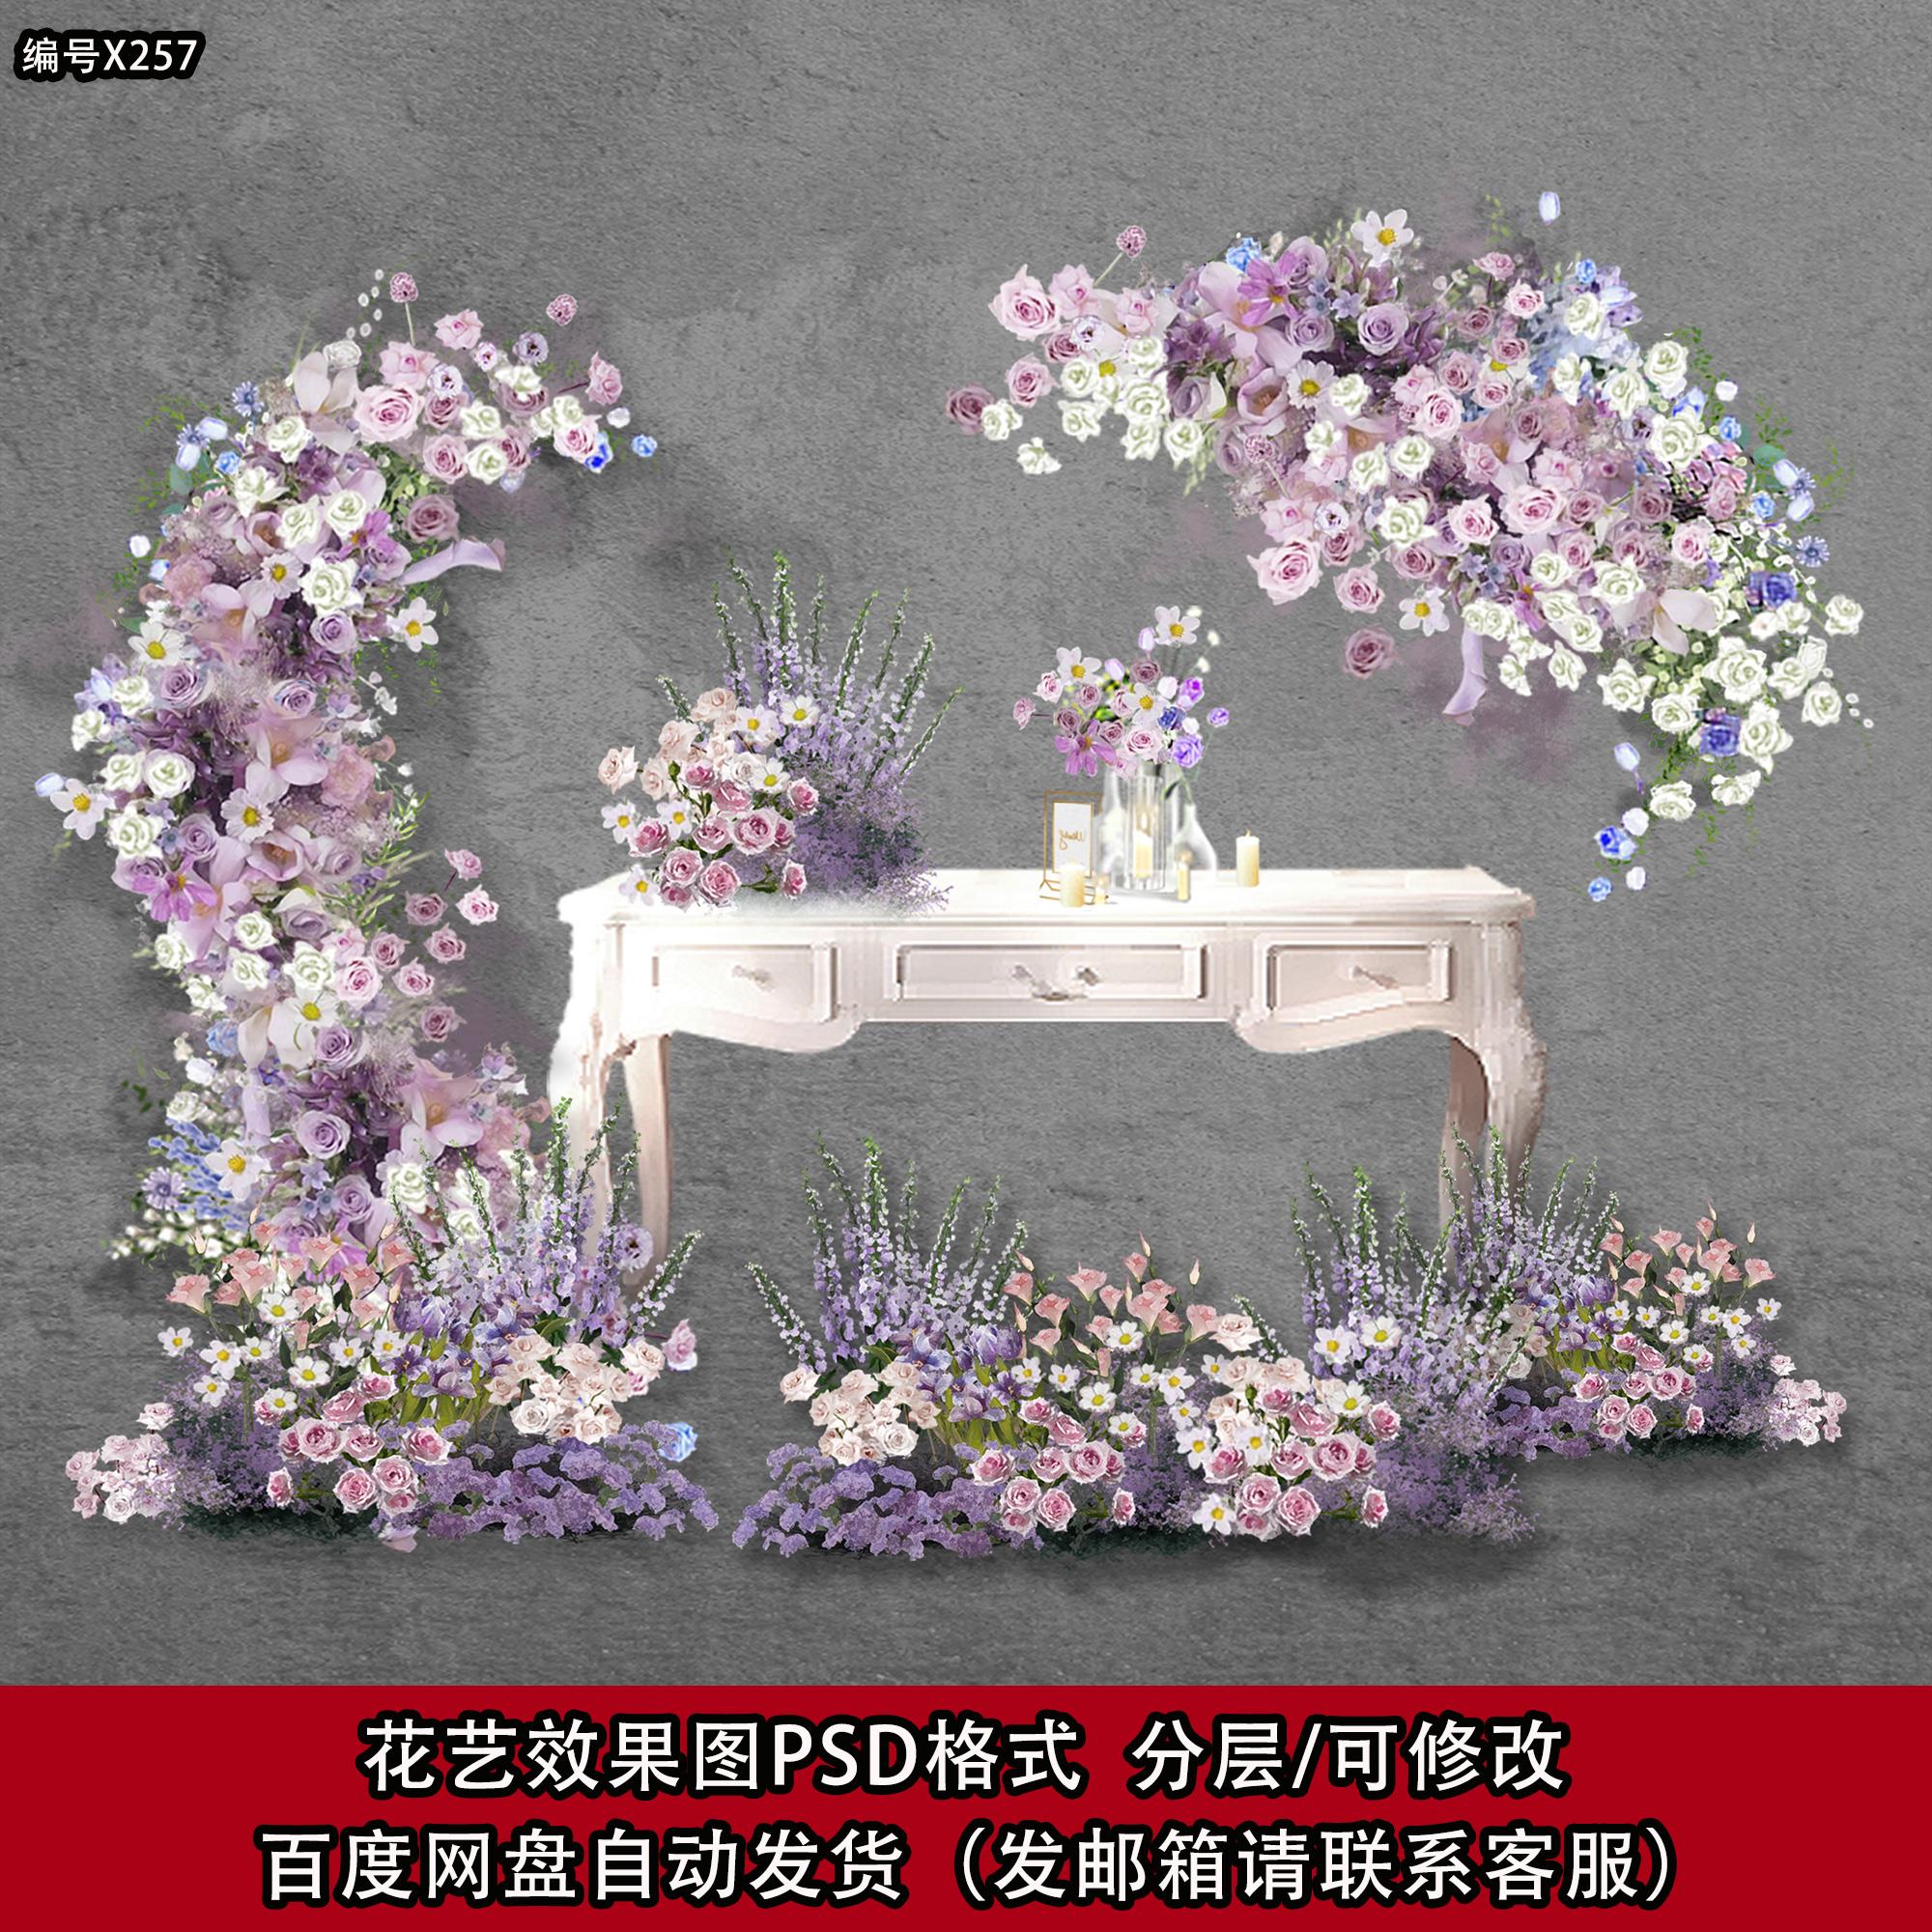 紫色莫奈花园法式欧式手绘婚礼手绘花艺素材psd源文件效果图模板